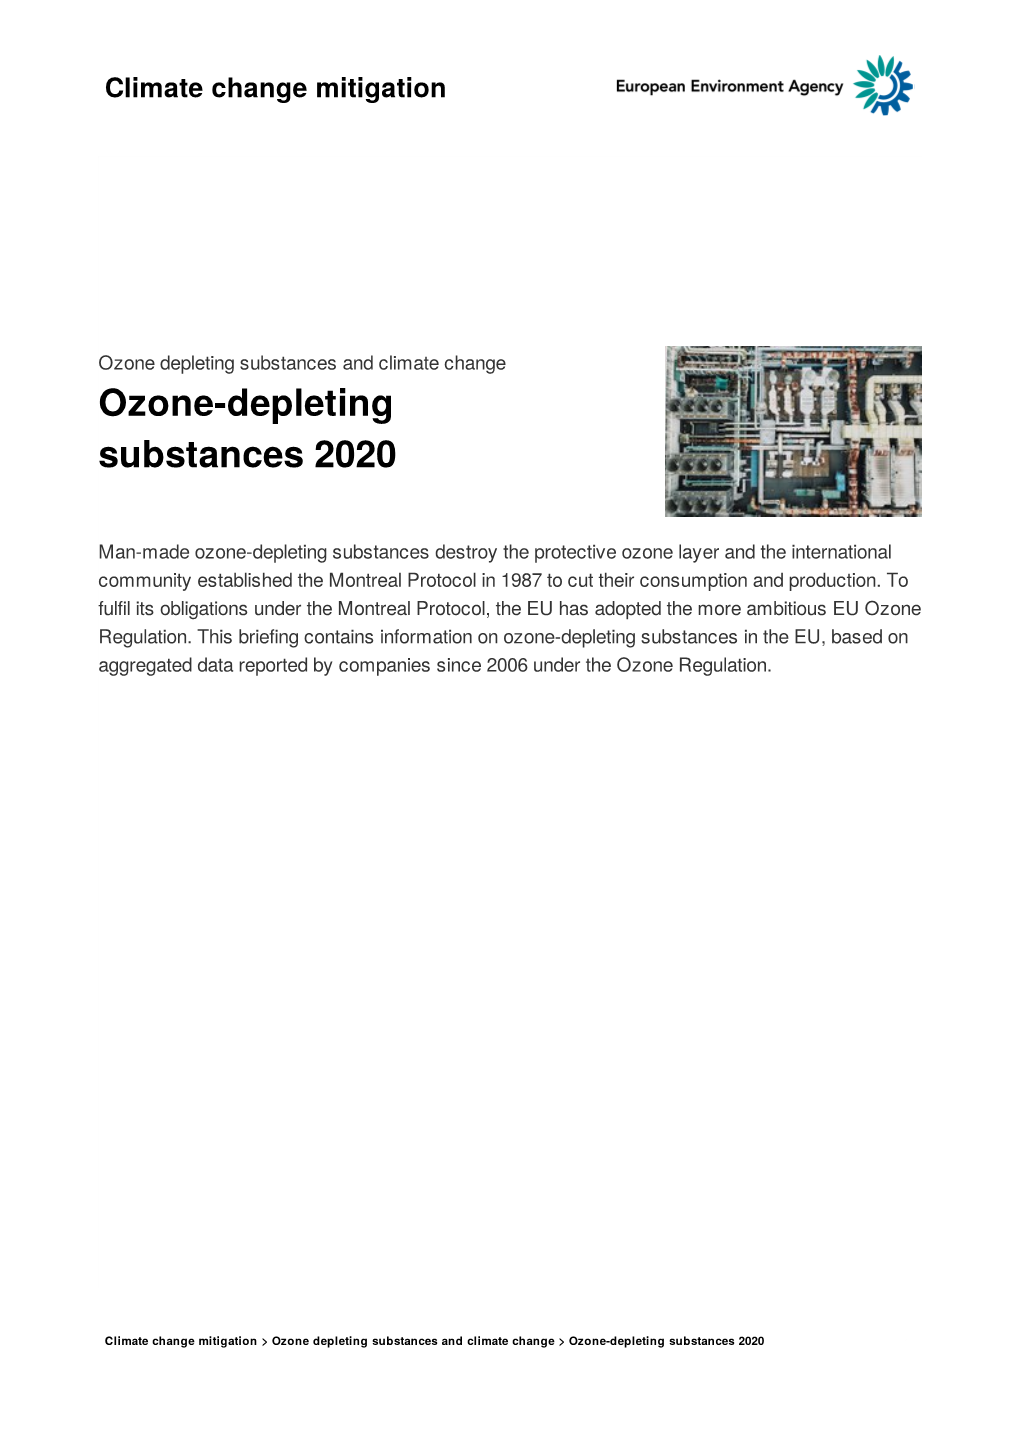 Ozone-Depleting Substances 2020